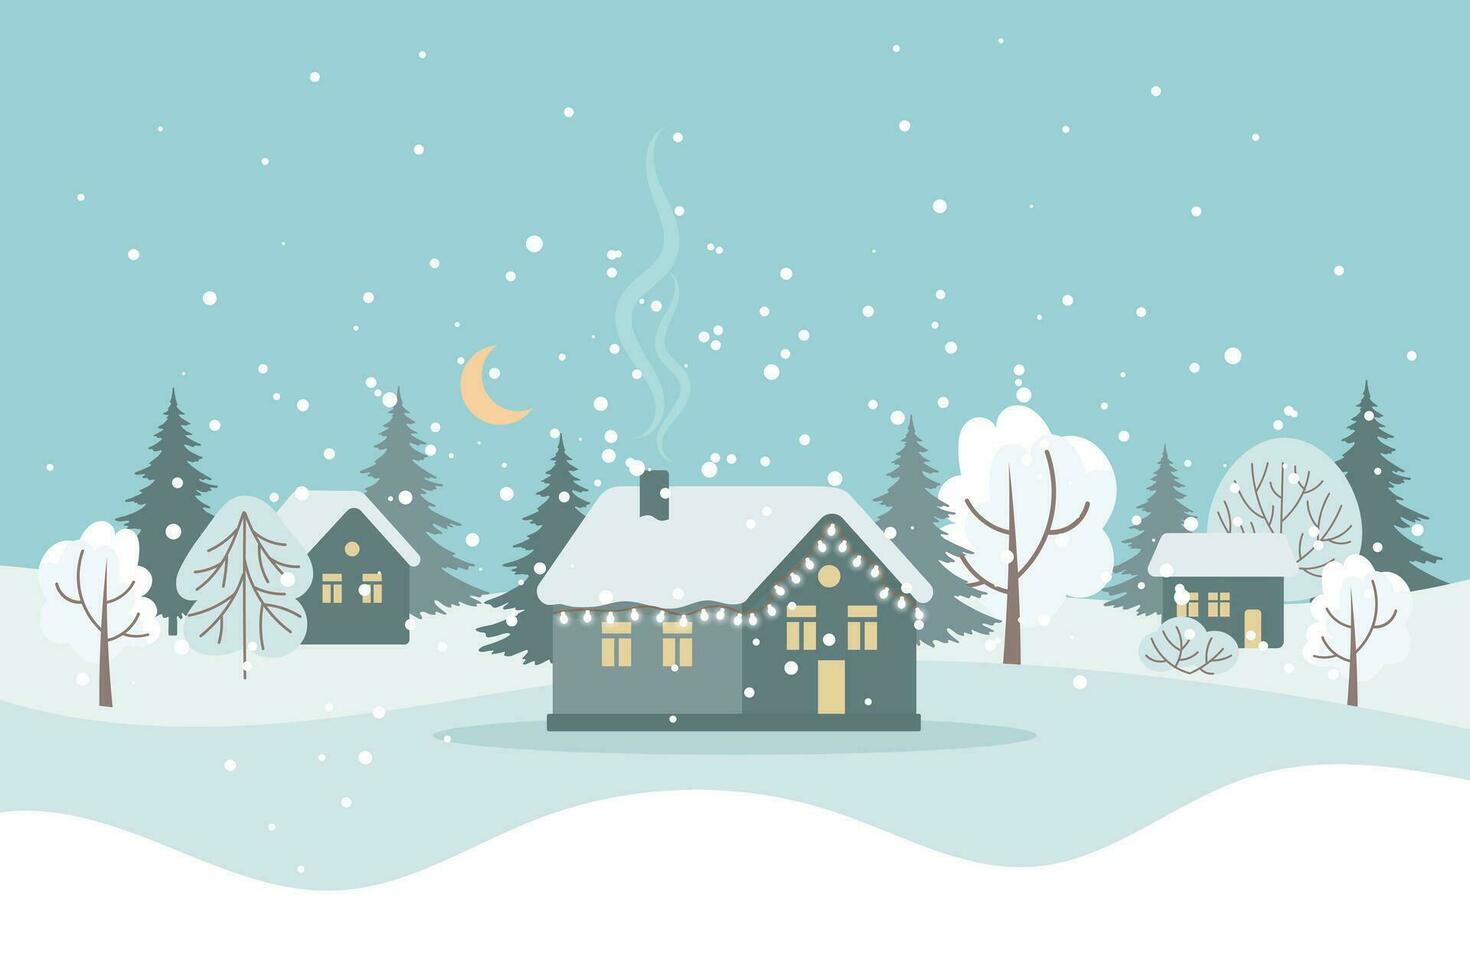 winter landschap met schattig huizen, bomen en nacht lucht met maan, vrolijk Kerstmis groet kaart sjabloon. illustratie in vlak stijl. vector